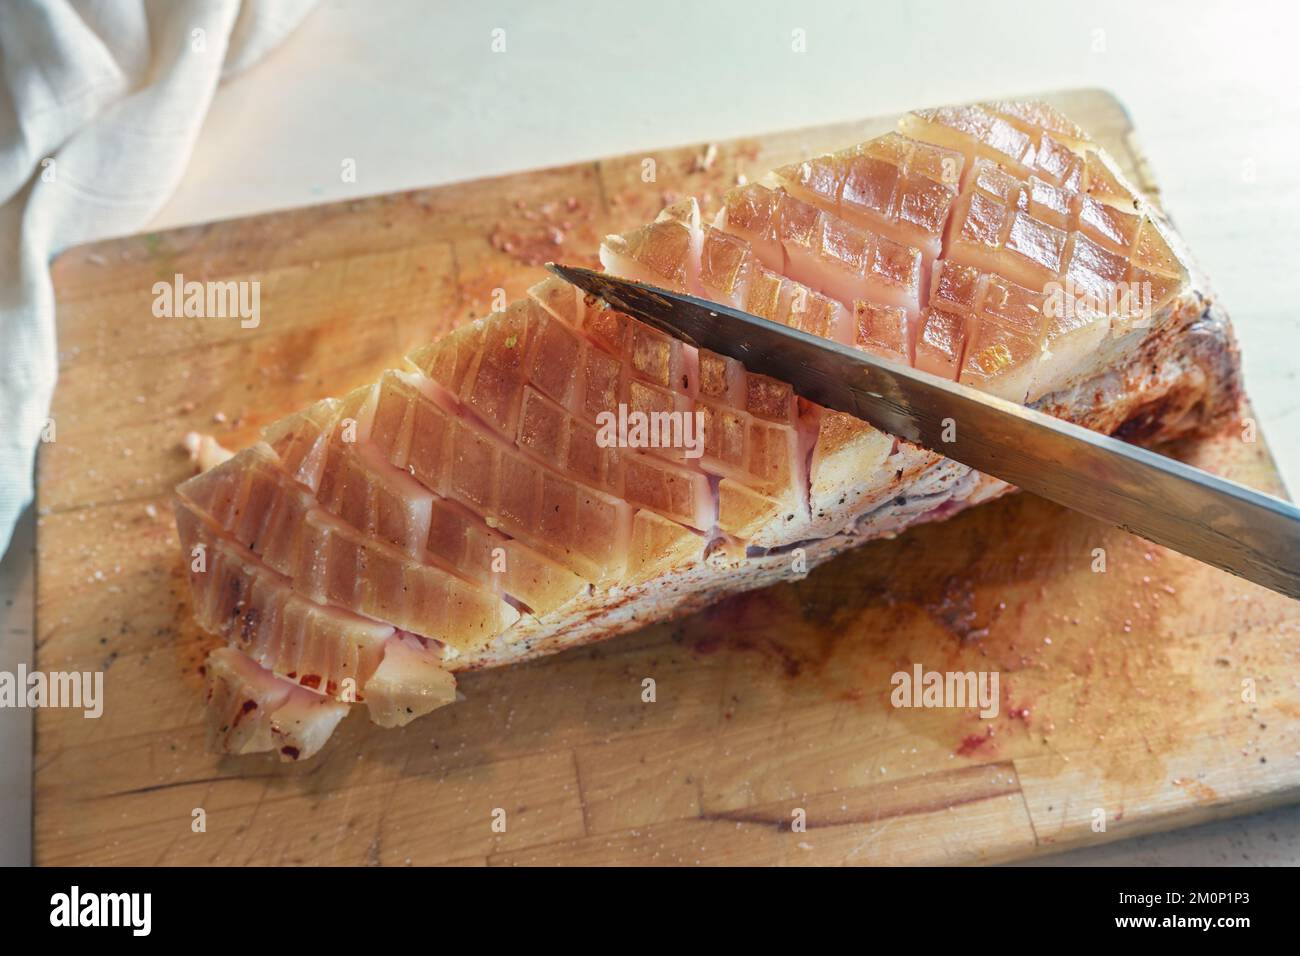 La crosta grassa di un pezzo di carne di maiale cruda condita viene intagliata con un coltello da cucina su un tagliere, preparando la cottura per un delizioso arrosto di crosta, selce Foto Stock